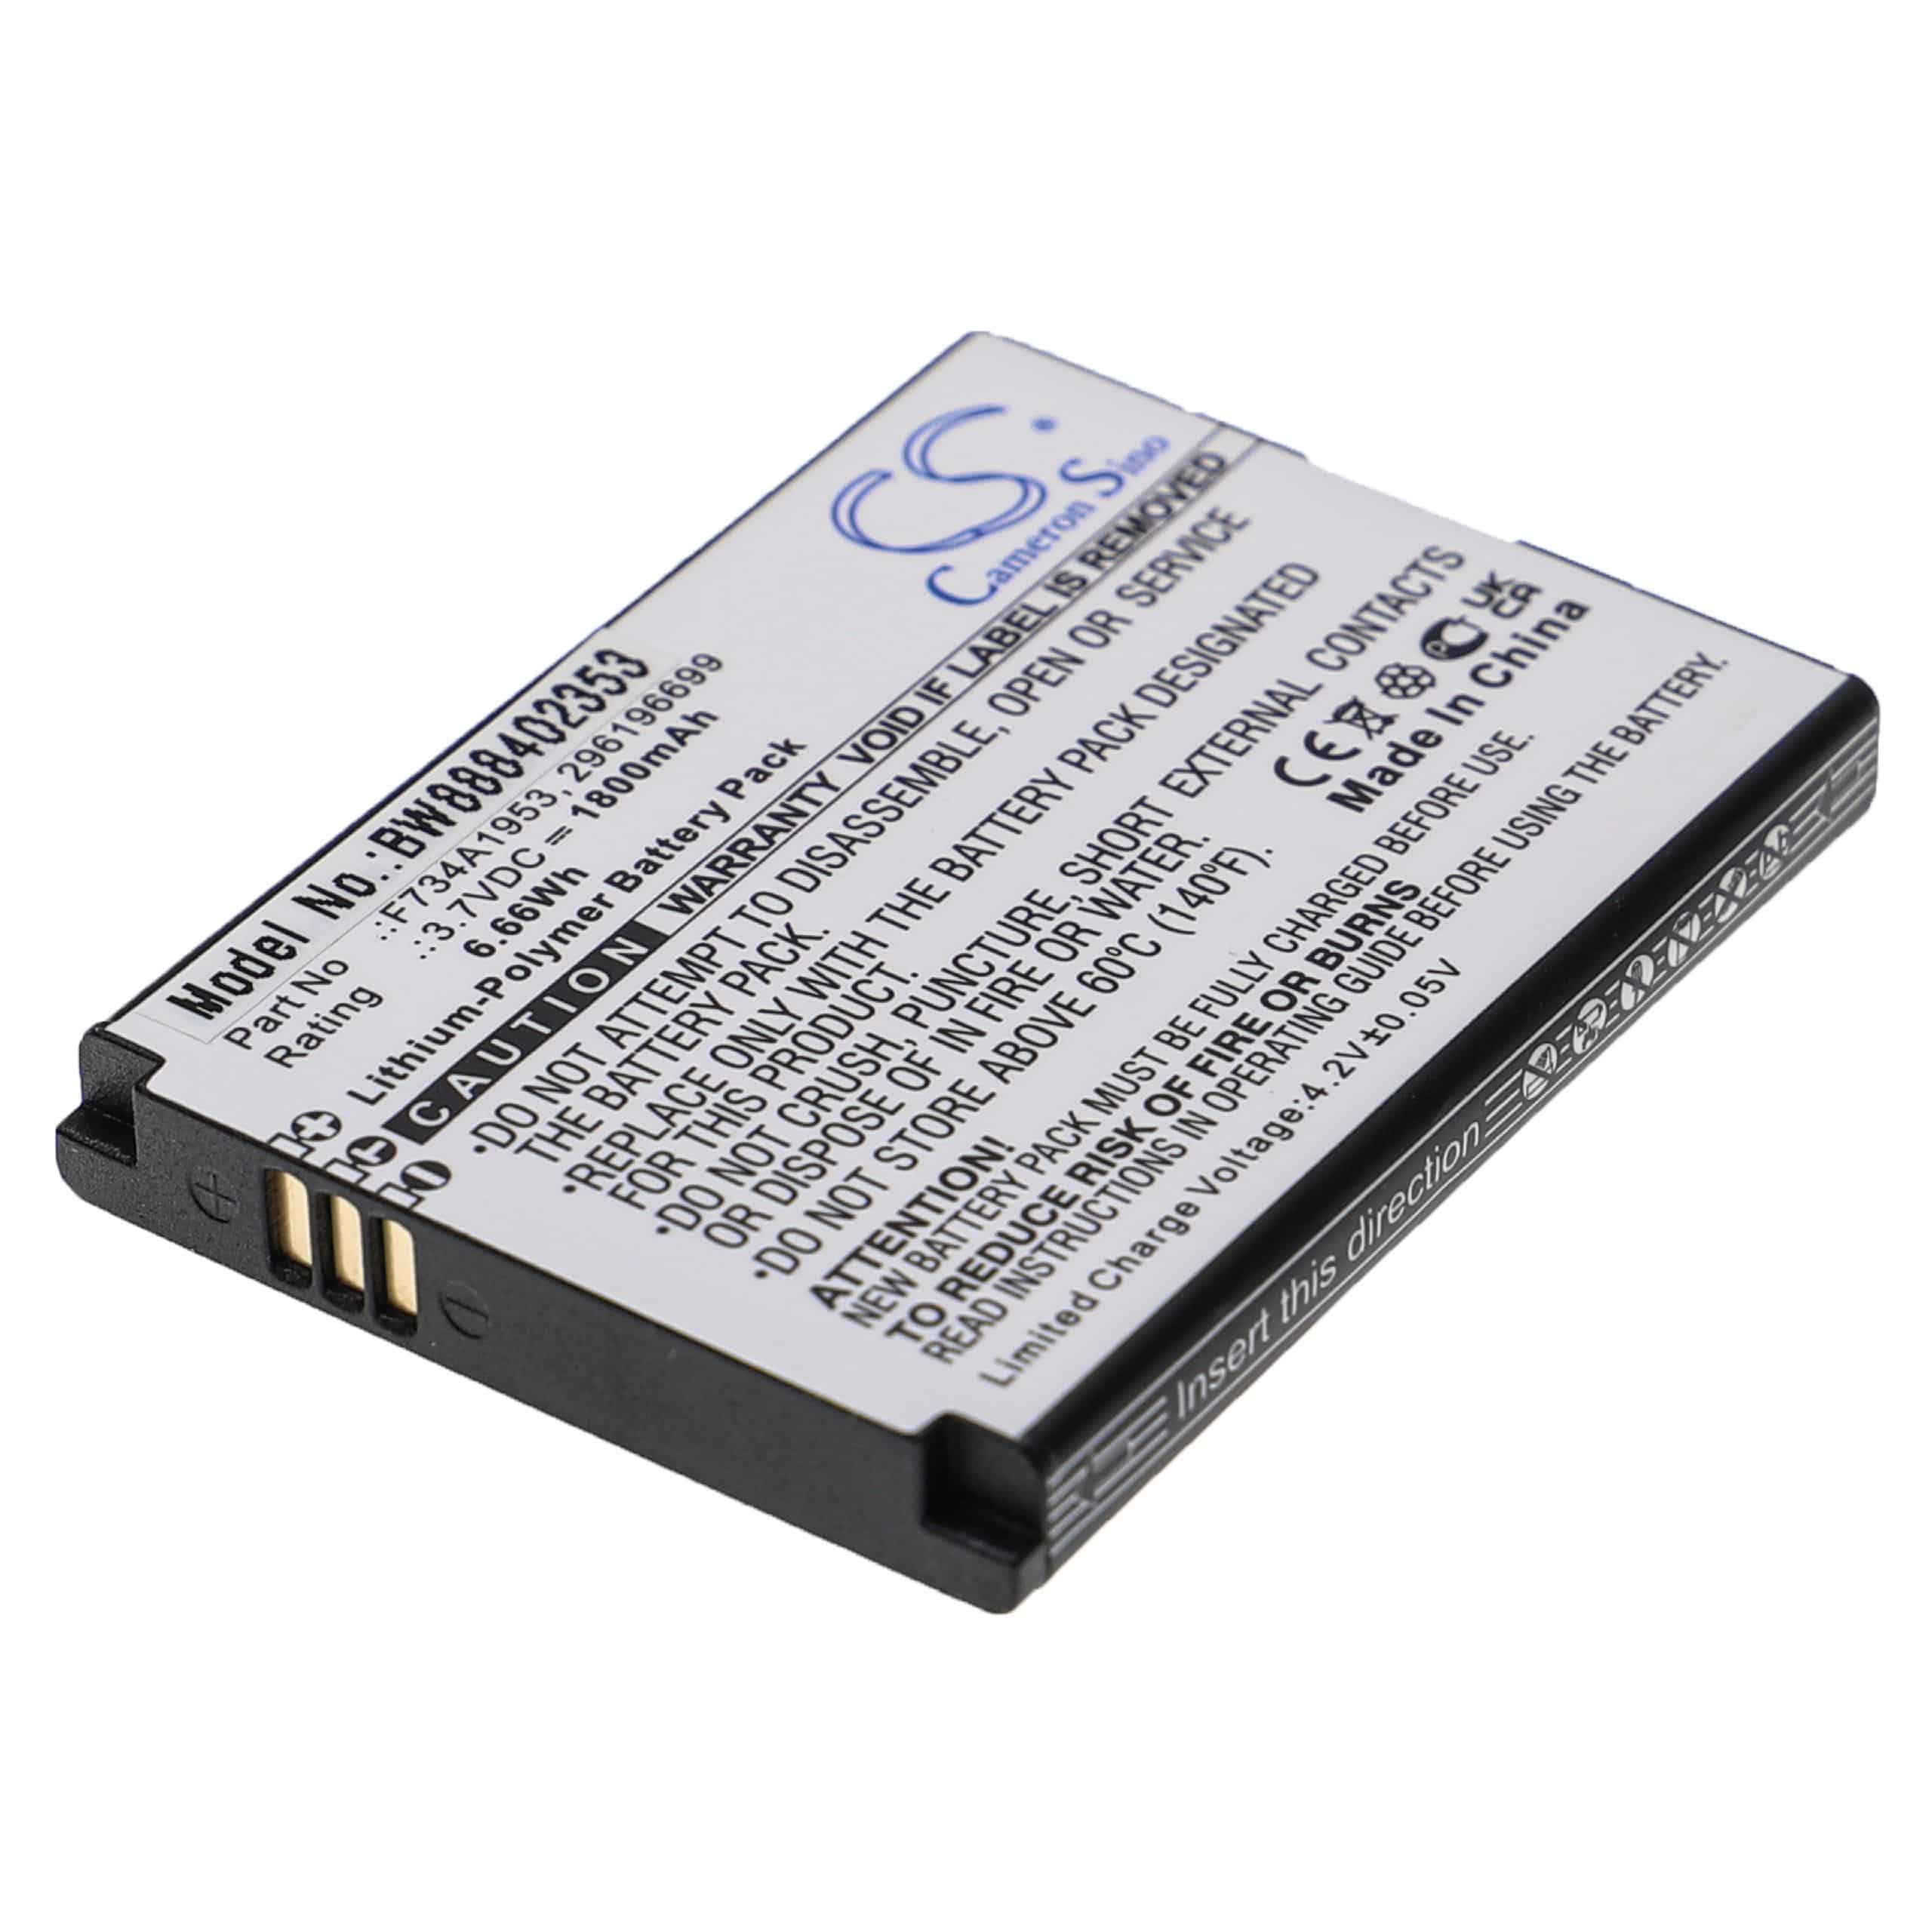 Batterie remplace Ingenico 296196699, F734A1953 pour lecteur de carte - 1800mAh 3,7V Li-polymère